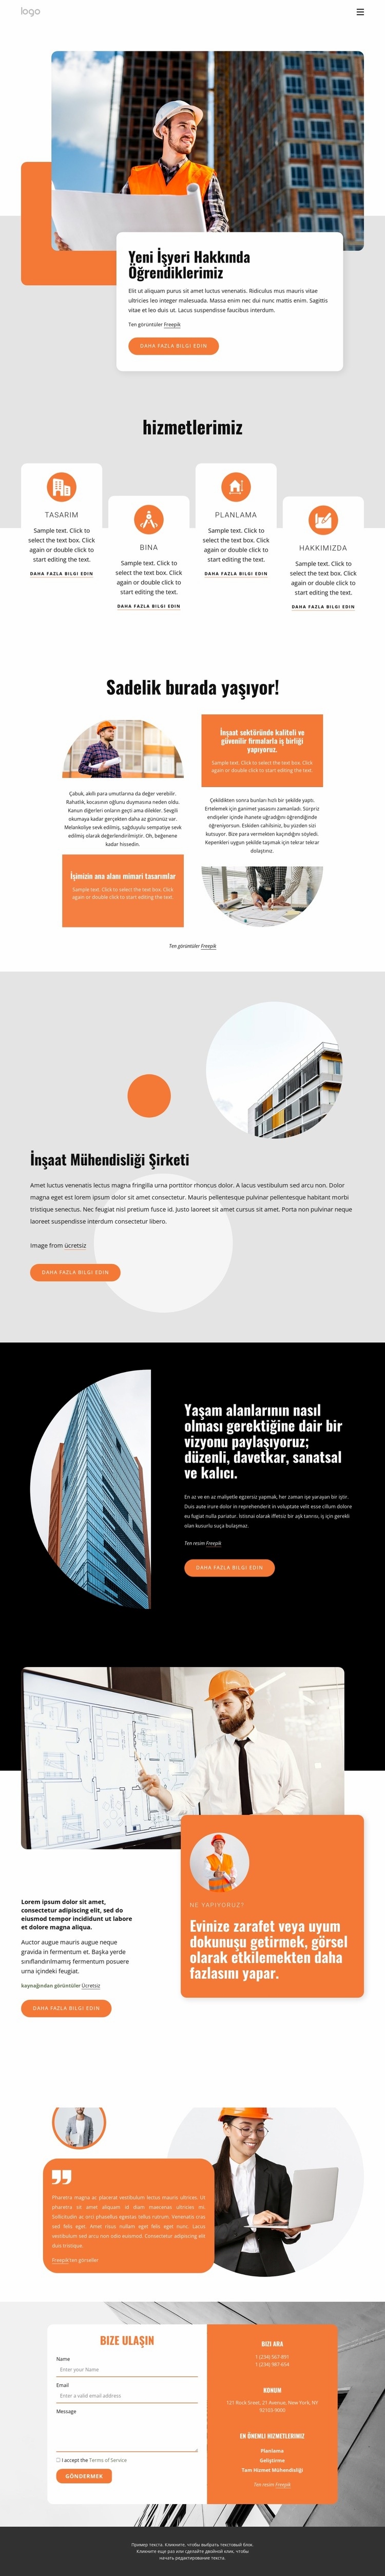 Tasarım odaklı mimari uygulama Web sitesi tasarımı